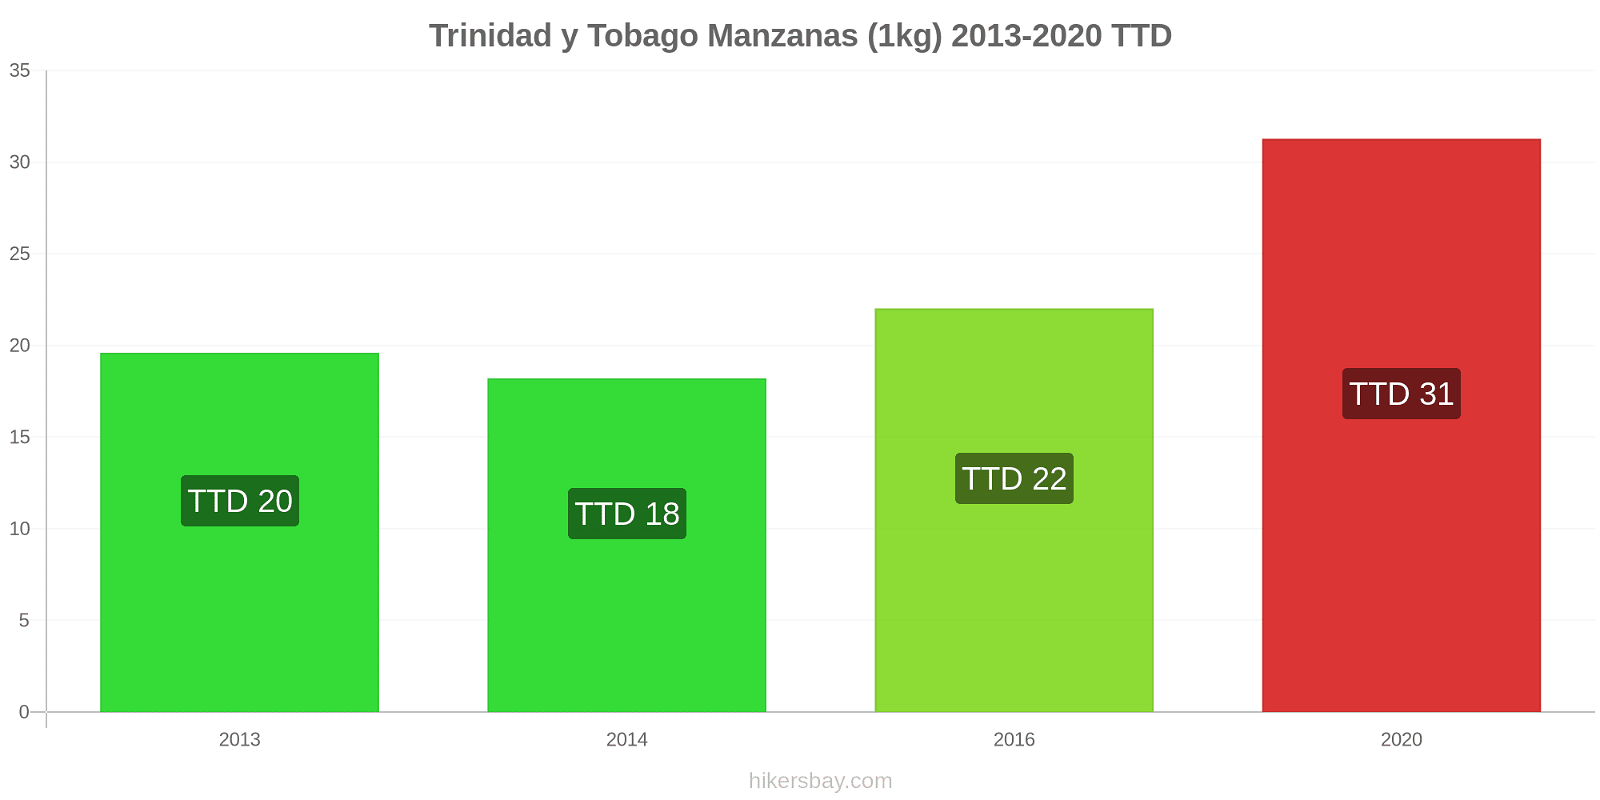 Trinidad y Tobago cambios de precios Manzanas (1kg) hikersbay.com